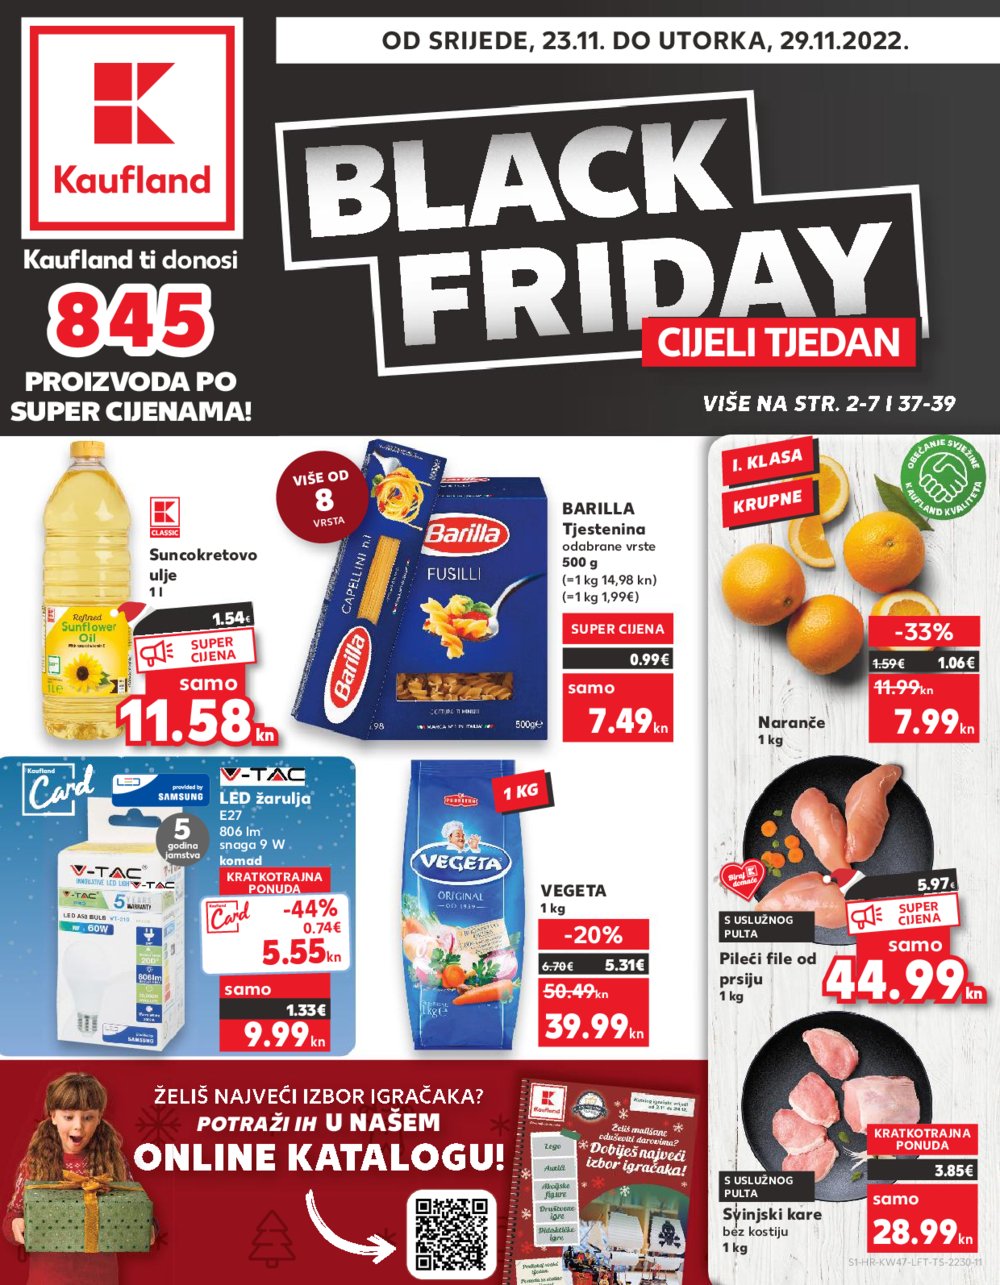 Kaufland katalog Black Friday cijeli tjedan 23.11.-29.11.2022. VG, DS, Vu, Ma, Po, Rv